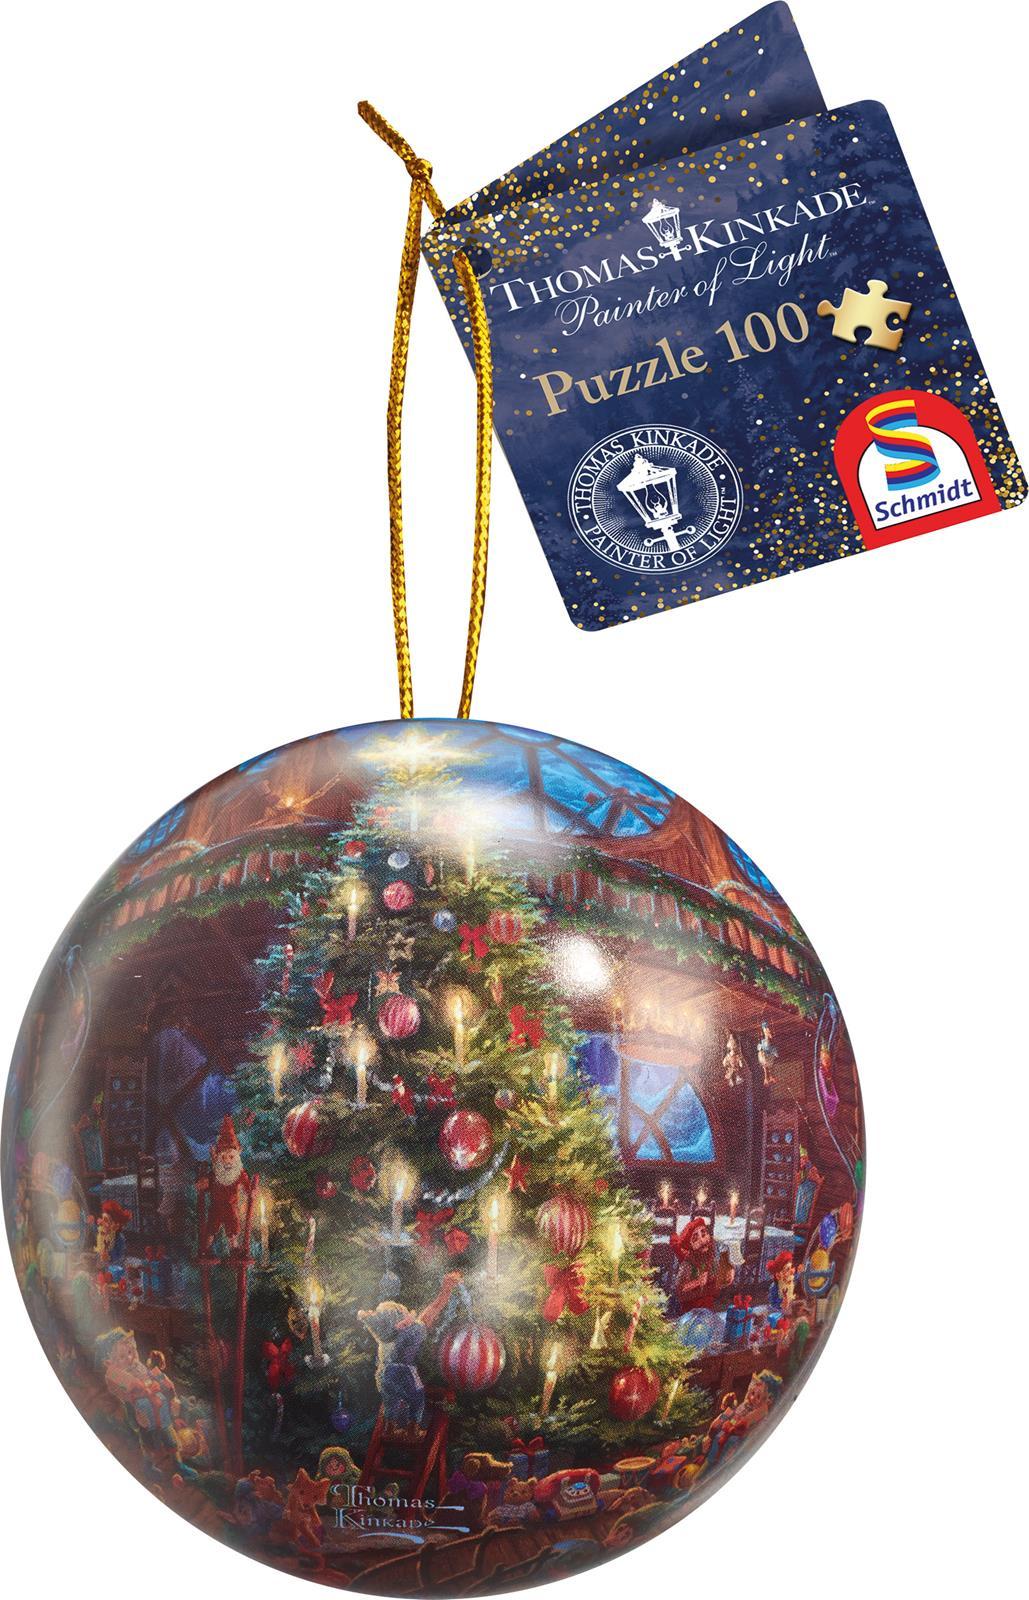 Schmidt Puzzle Weihnachtskugel mit Thomas Kinkade Motiven 100 Teile